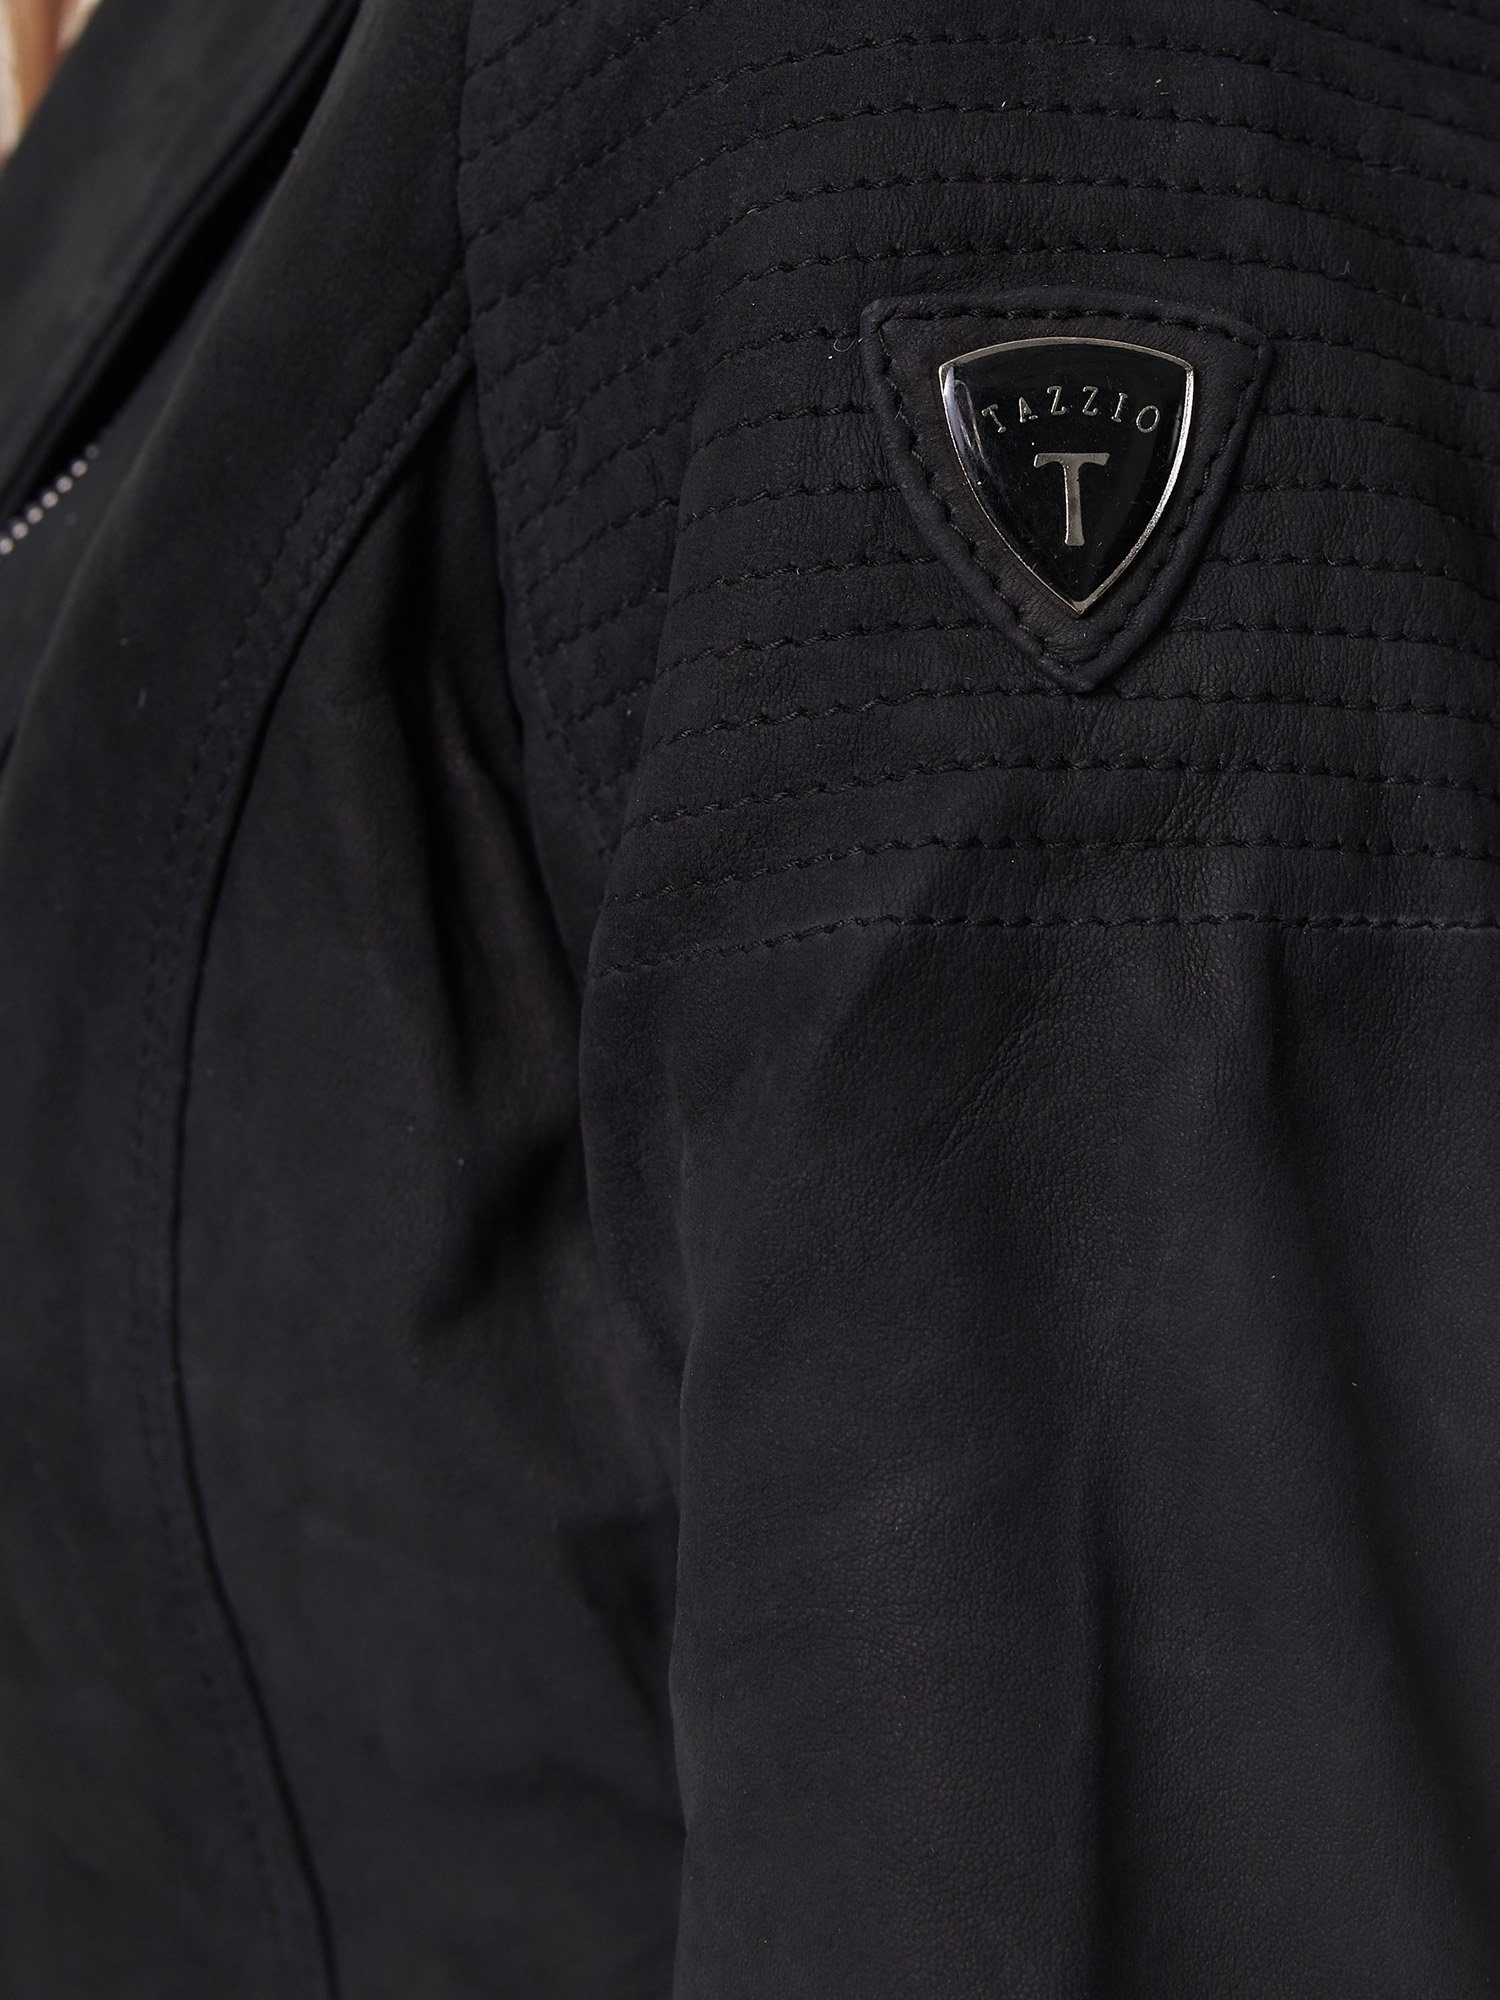 Look Damen Tazzio schwarz mit F500 Biker Lederjacke & Jacke im Zipper-Details Leder Reverskragen